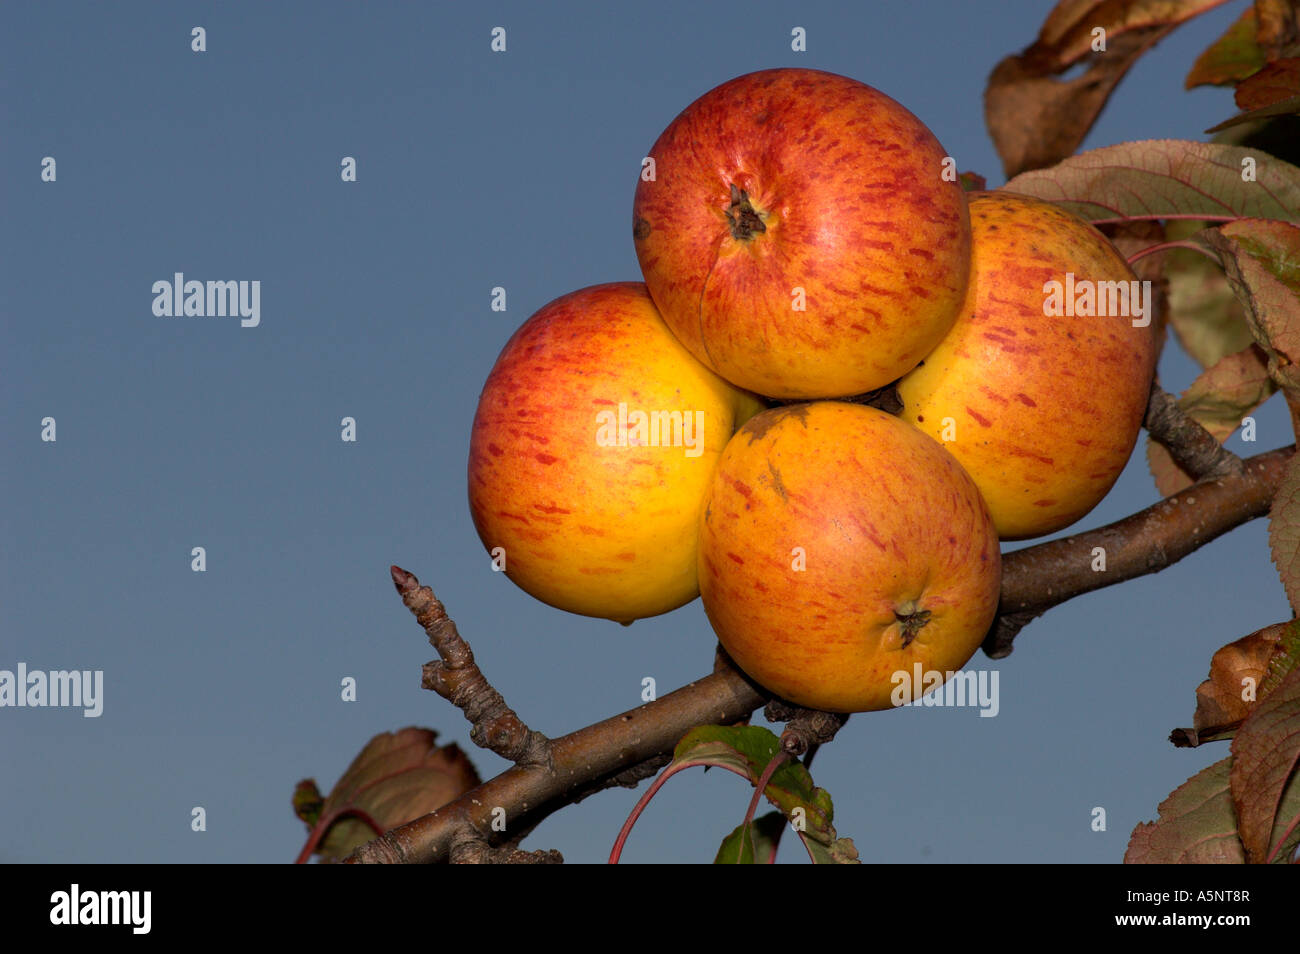 Fraise de Buhler apples. Brogdale Horticultural Trust, Faversham, Kent, England, UK. Stock Photo